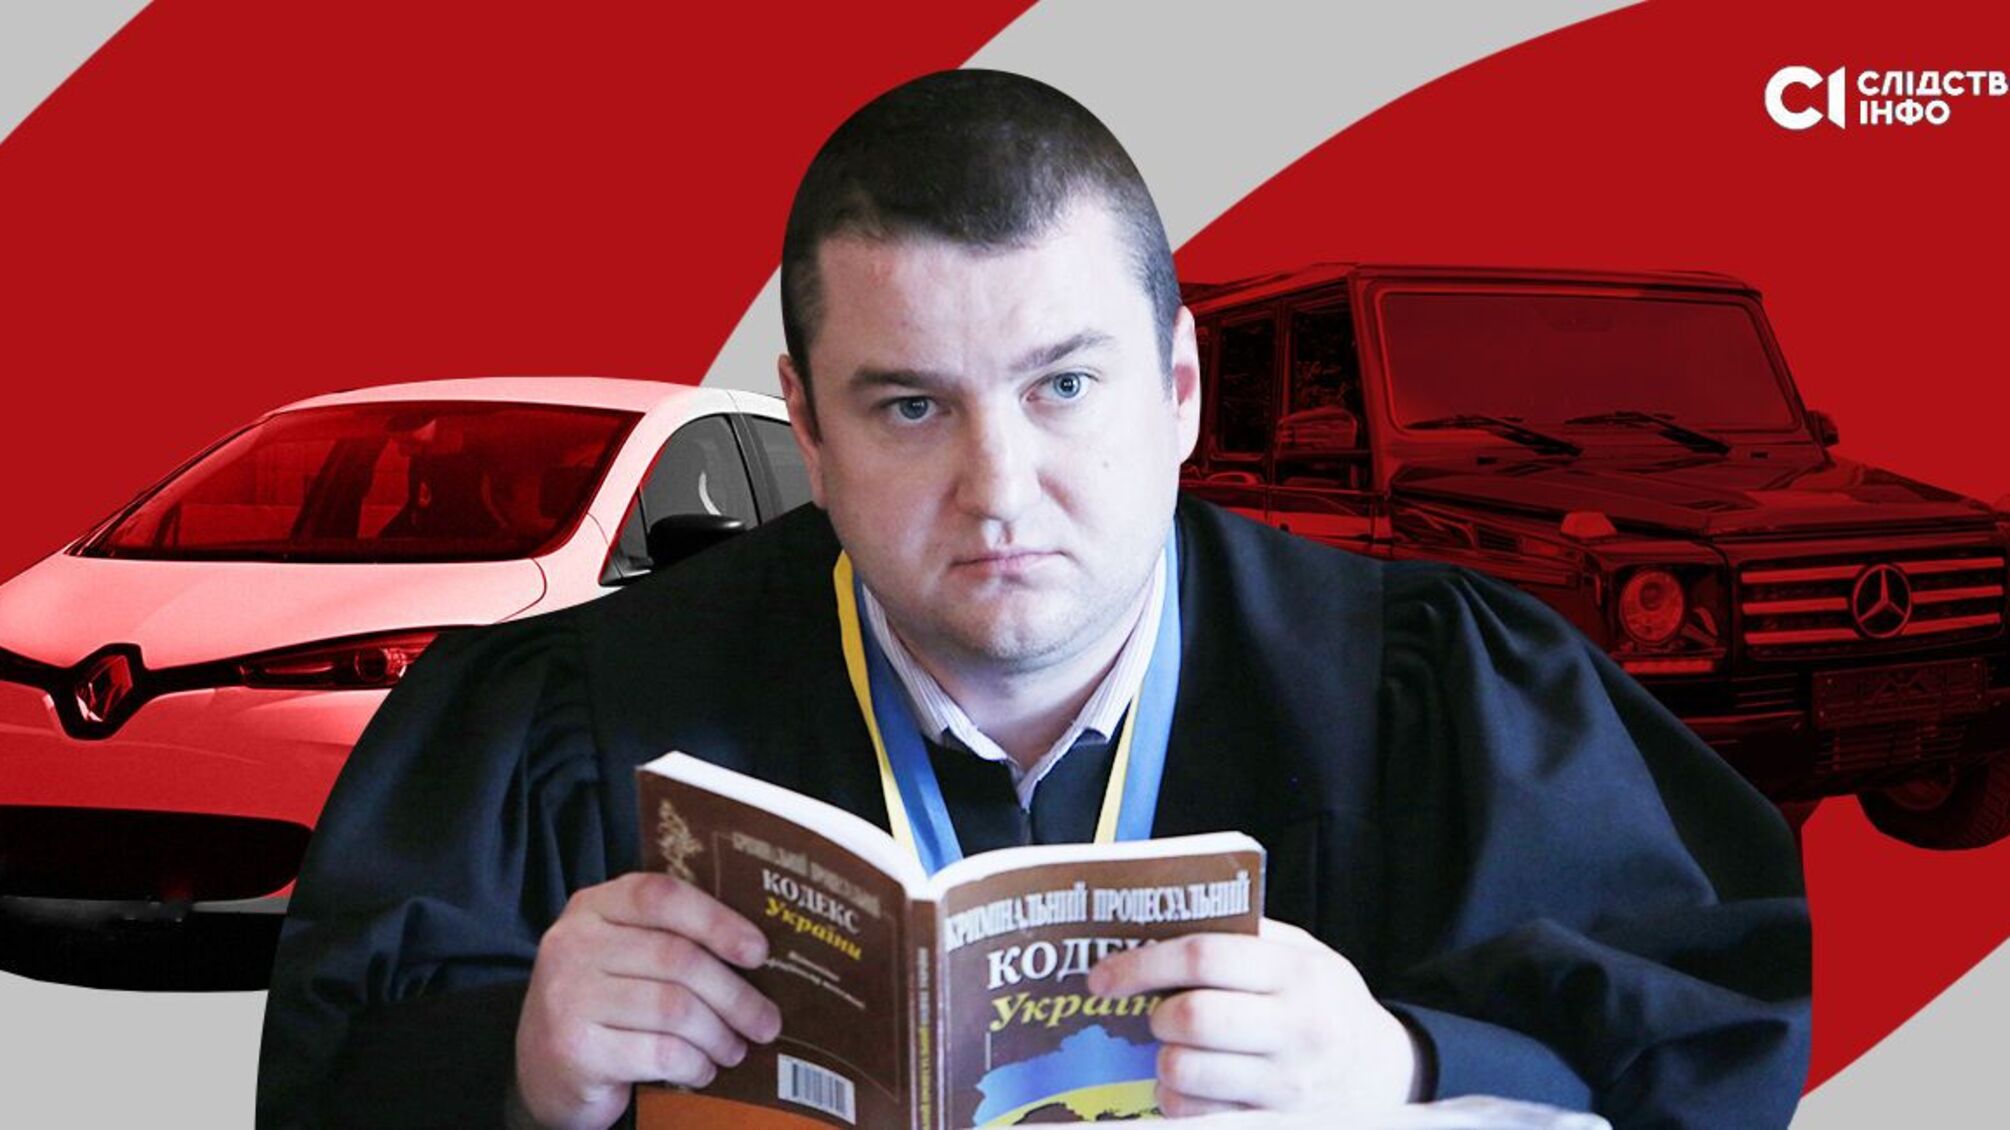 Суддя Нікушин оновив автопарк: елітні авто за символічну ціну в 10 000 грн, – ЗМІ